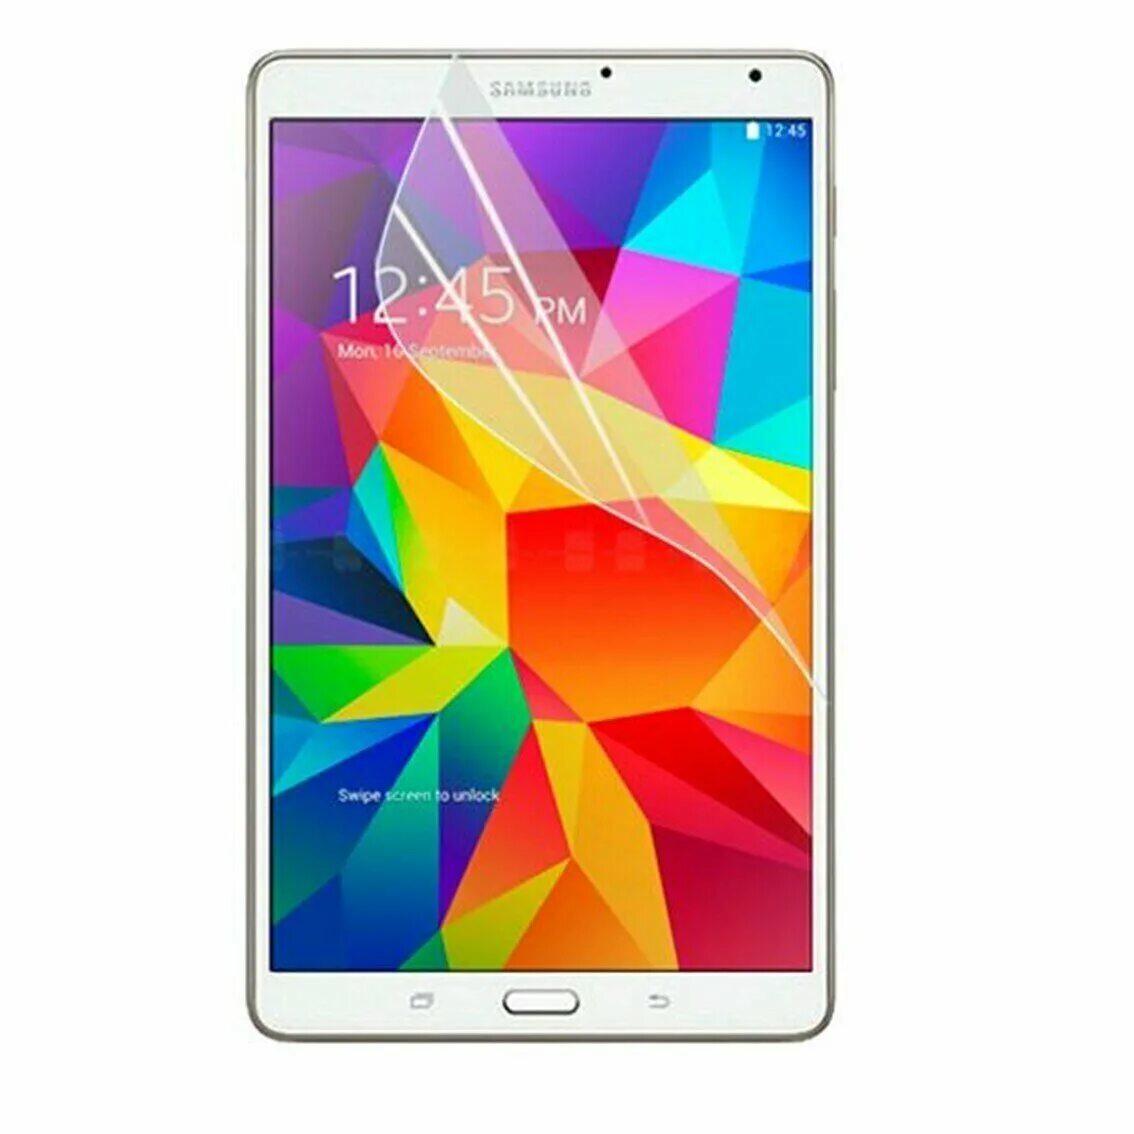 Купить планшет таб 4. Samsung Galaxy Tab 4. Планшет Samsung Galaxy Tab 4 7.0. Планшет самсунг галакси таб 4. Сакмсун7г гелакси таб 8.